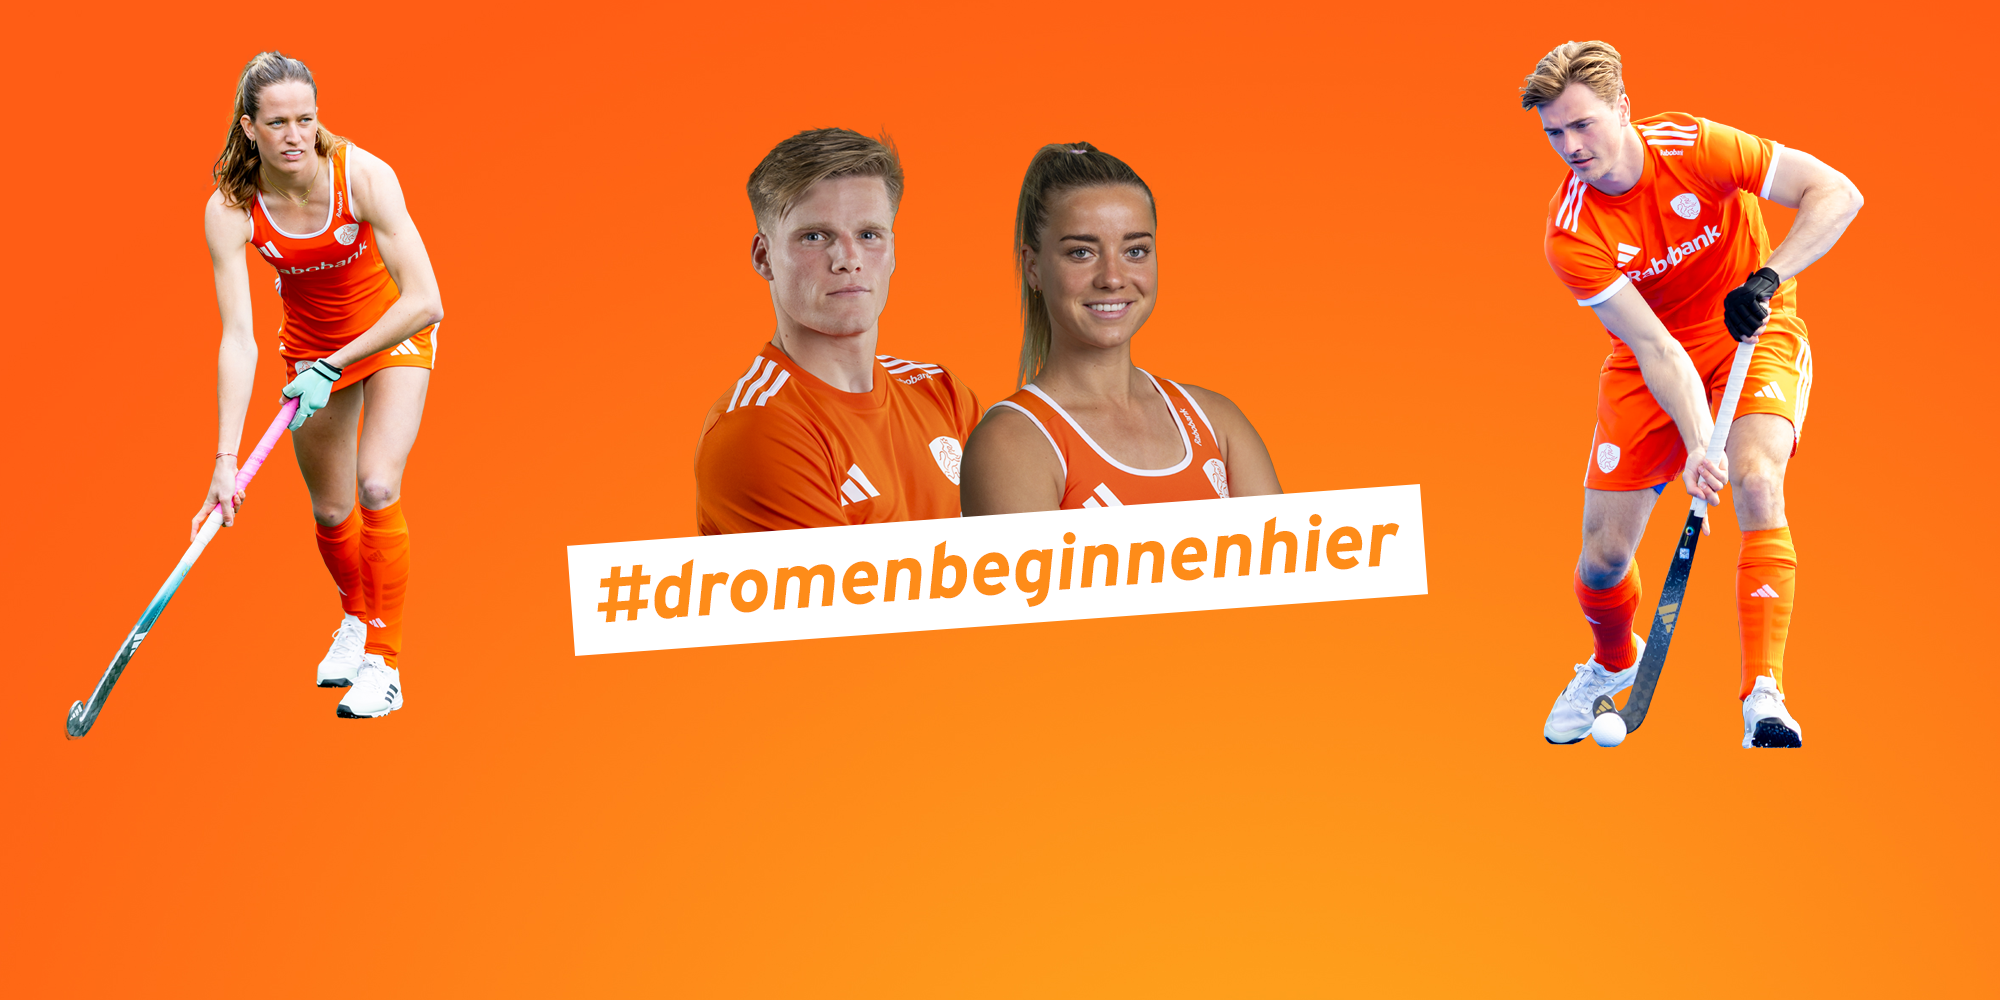 Campagne Oranje helden: #dromenbeginnenhier